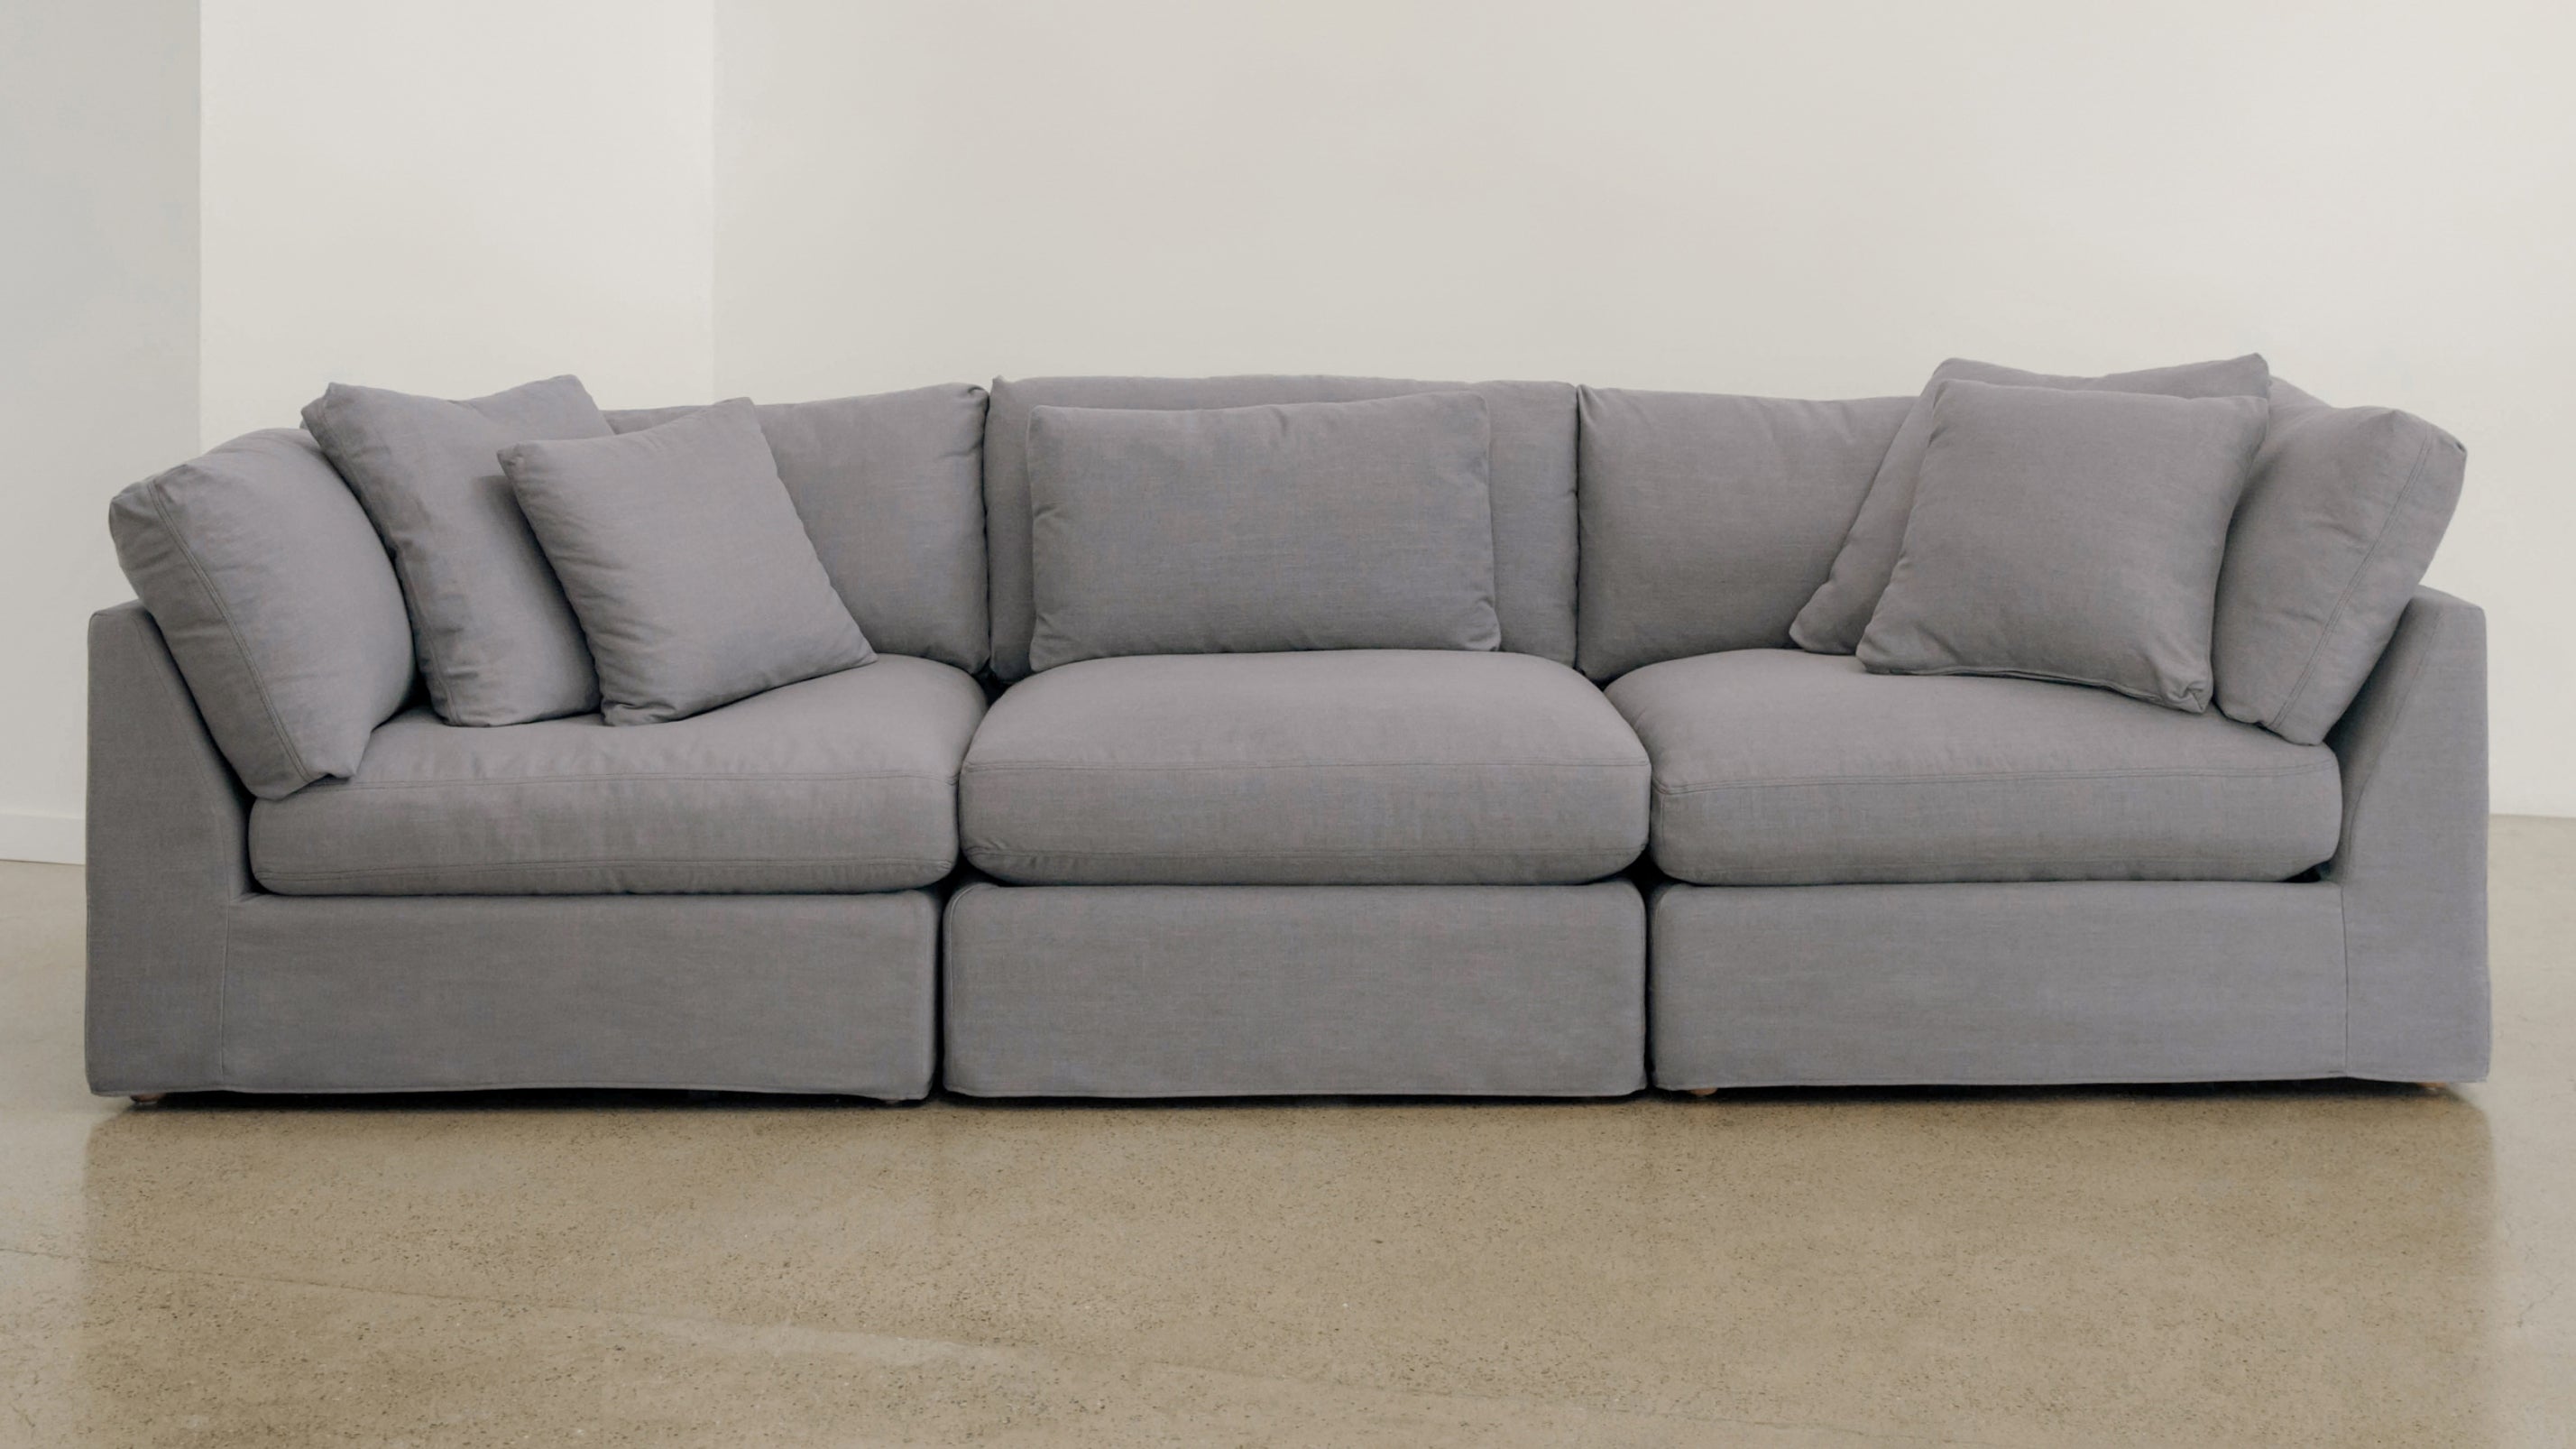 Get Together™ 3-Piece Modular Sofa, Large, Clay - Image 8